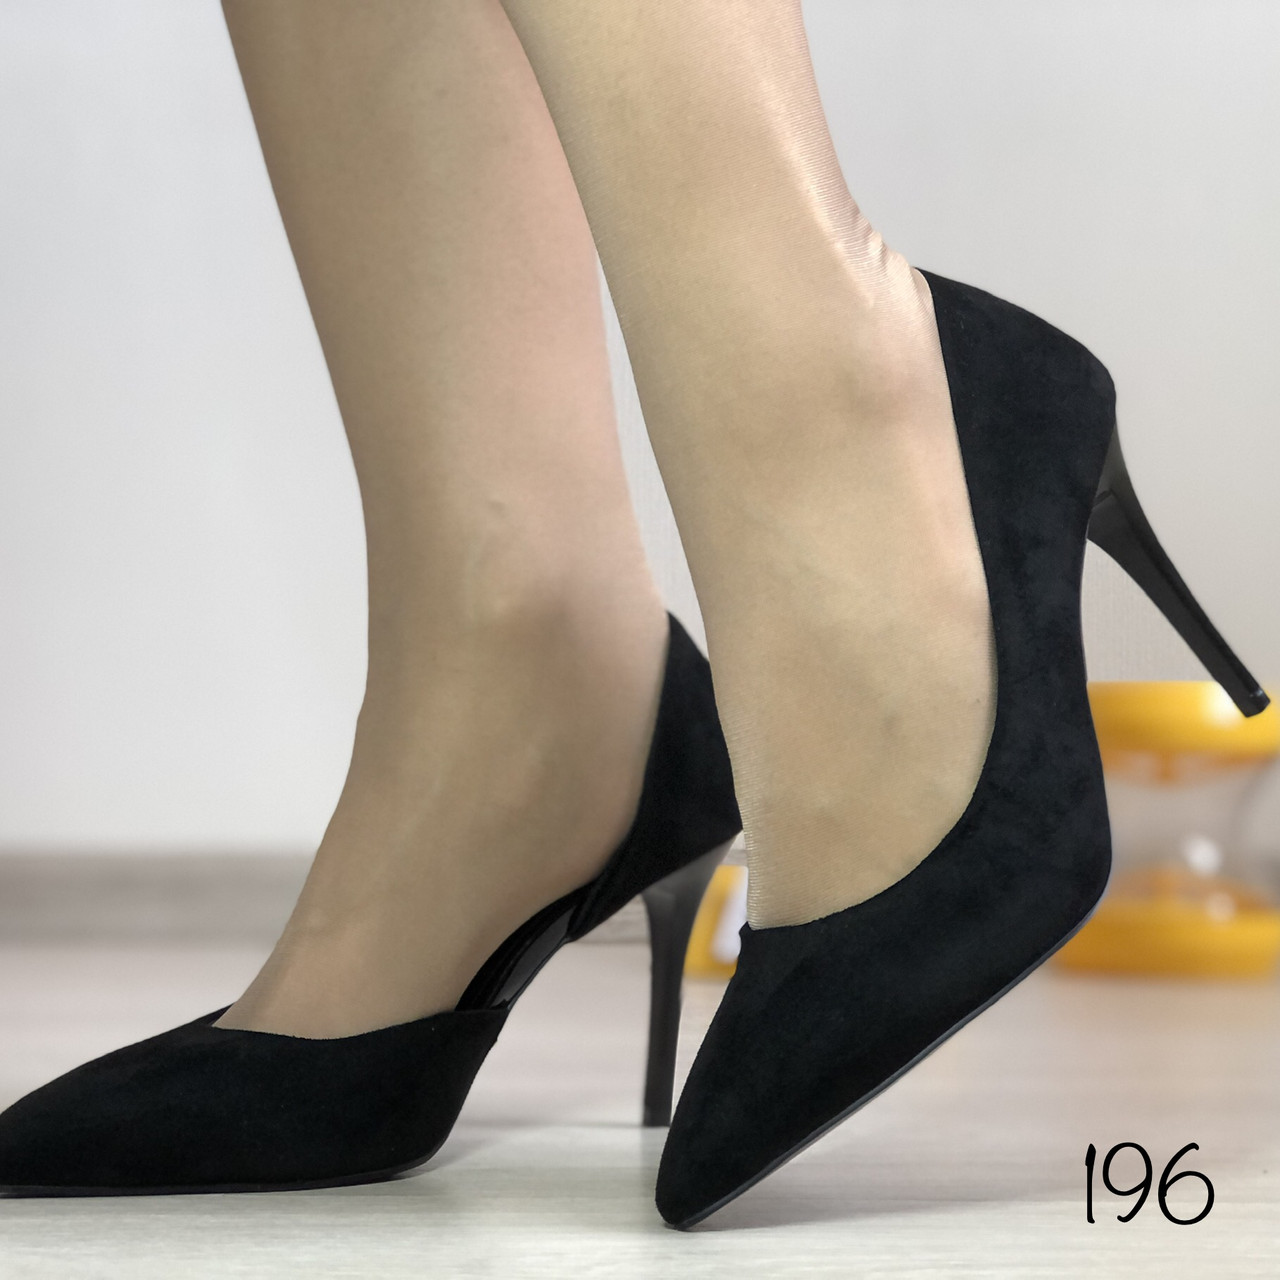 Жіночі класичні туфлі човники деленка, чорні, фото 1